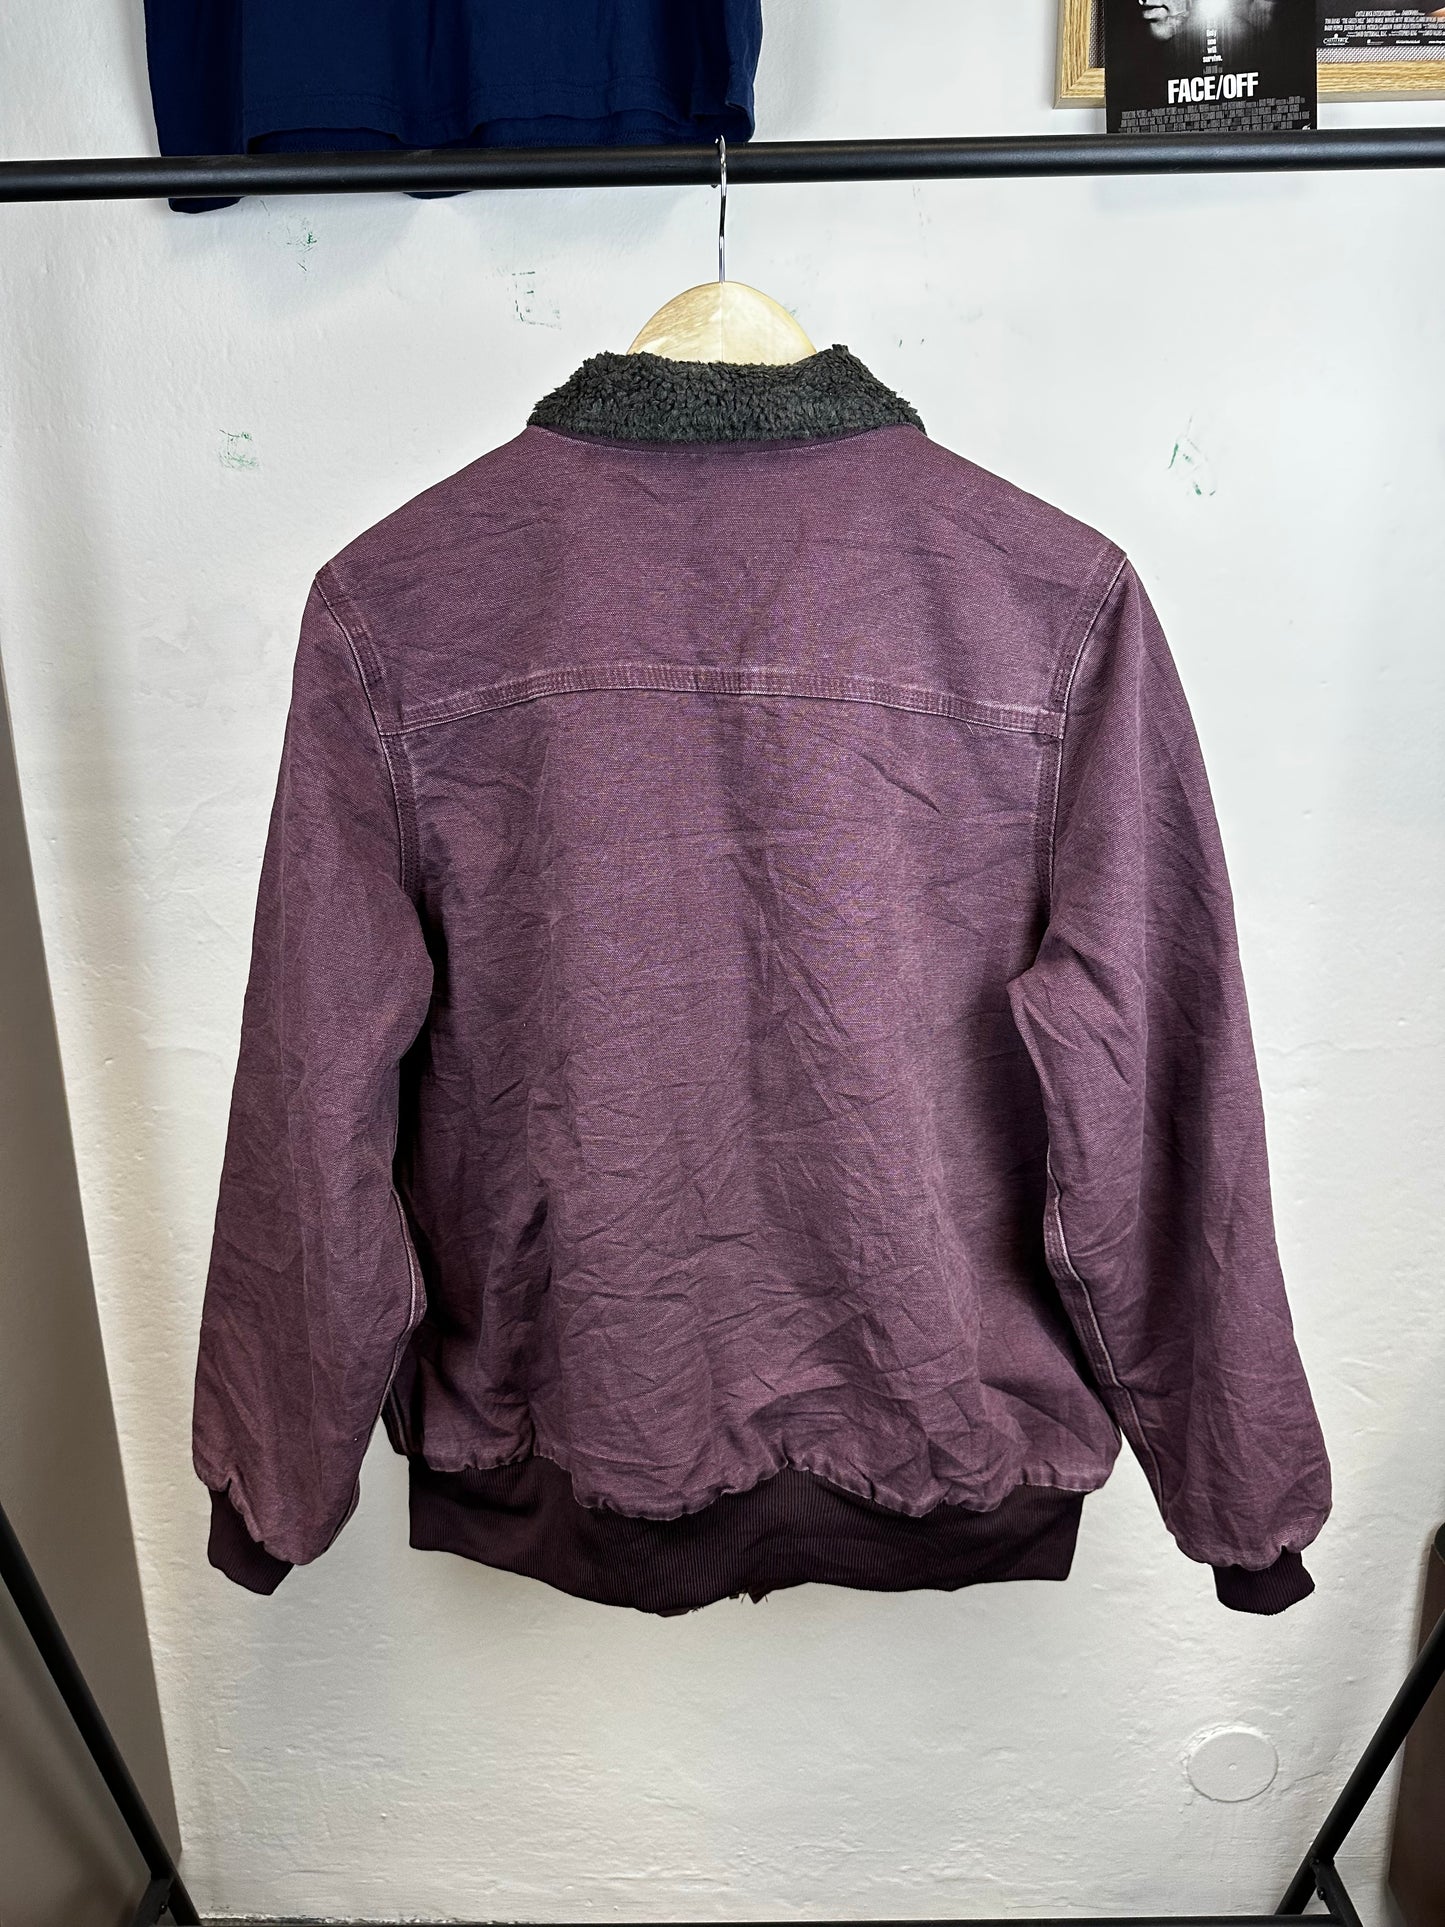 Vintage Carhartt jacket - size M